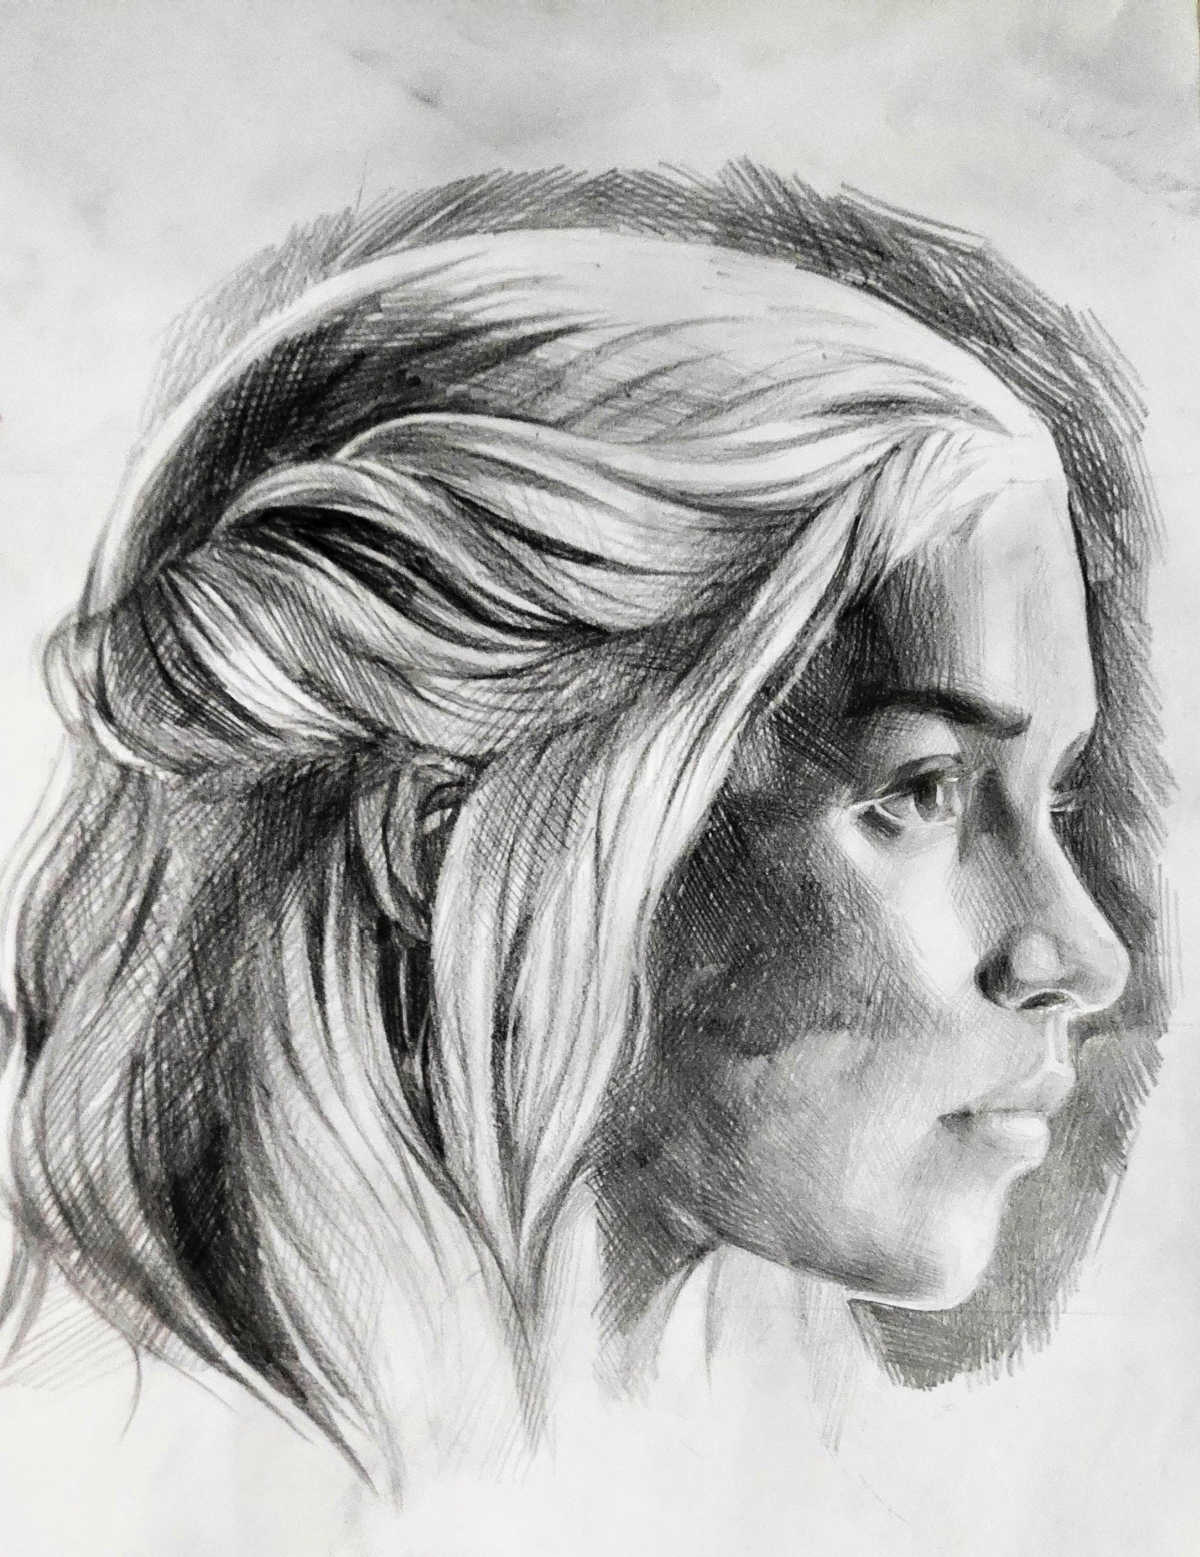 Daenerys Stormborn of the House Targaryen